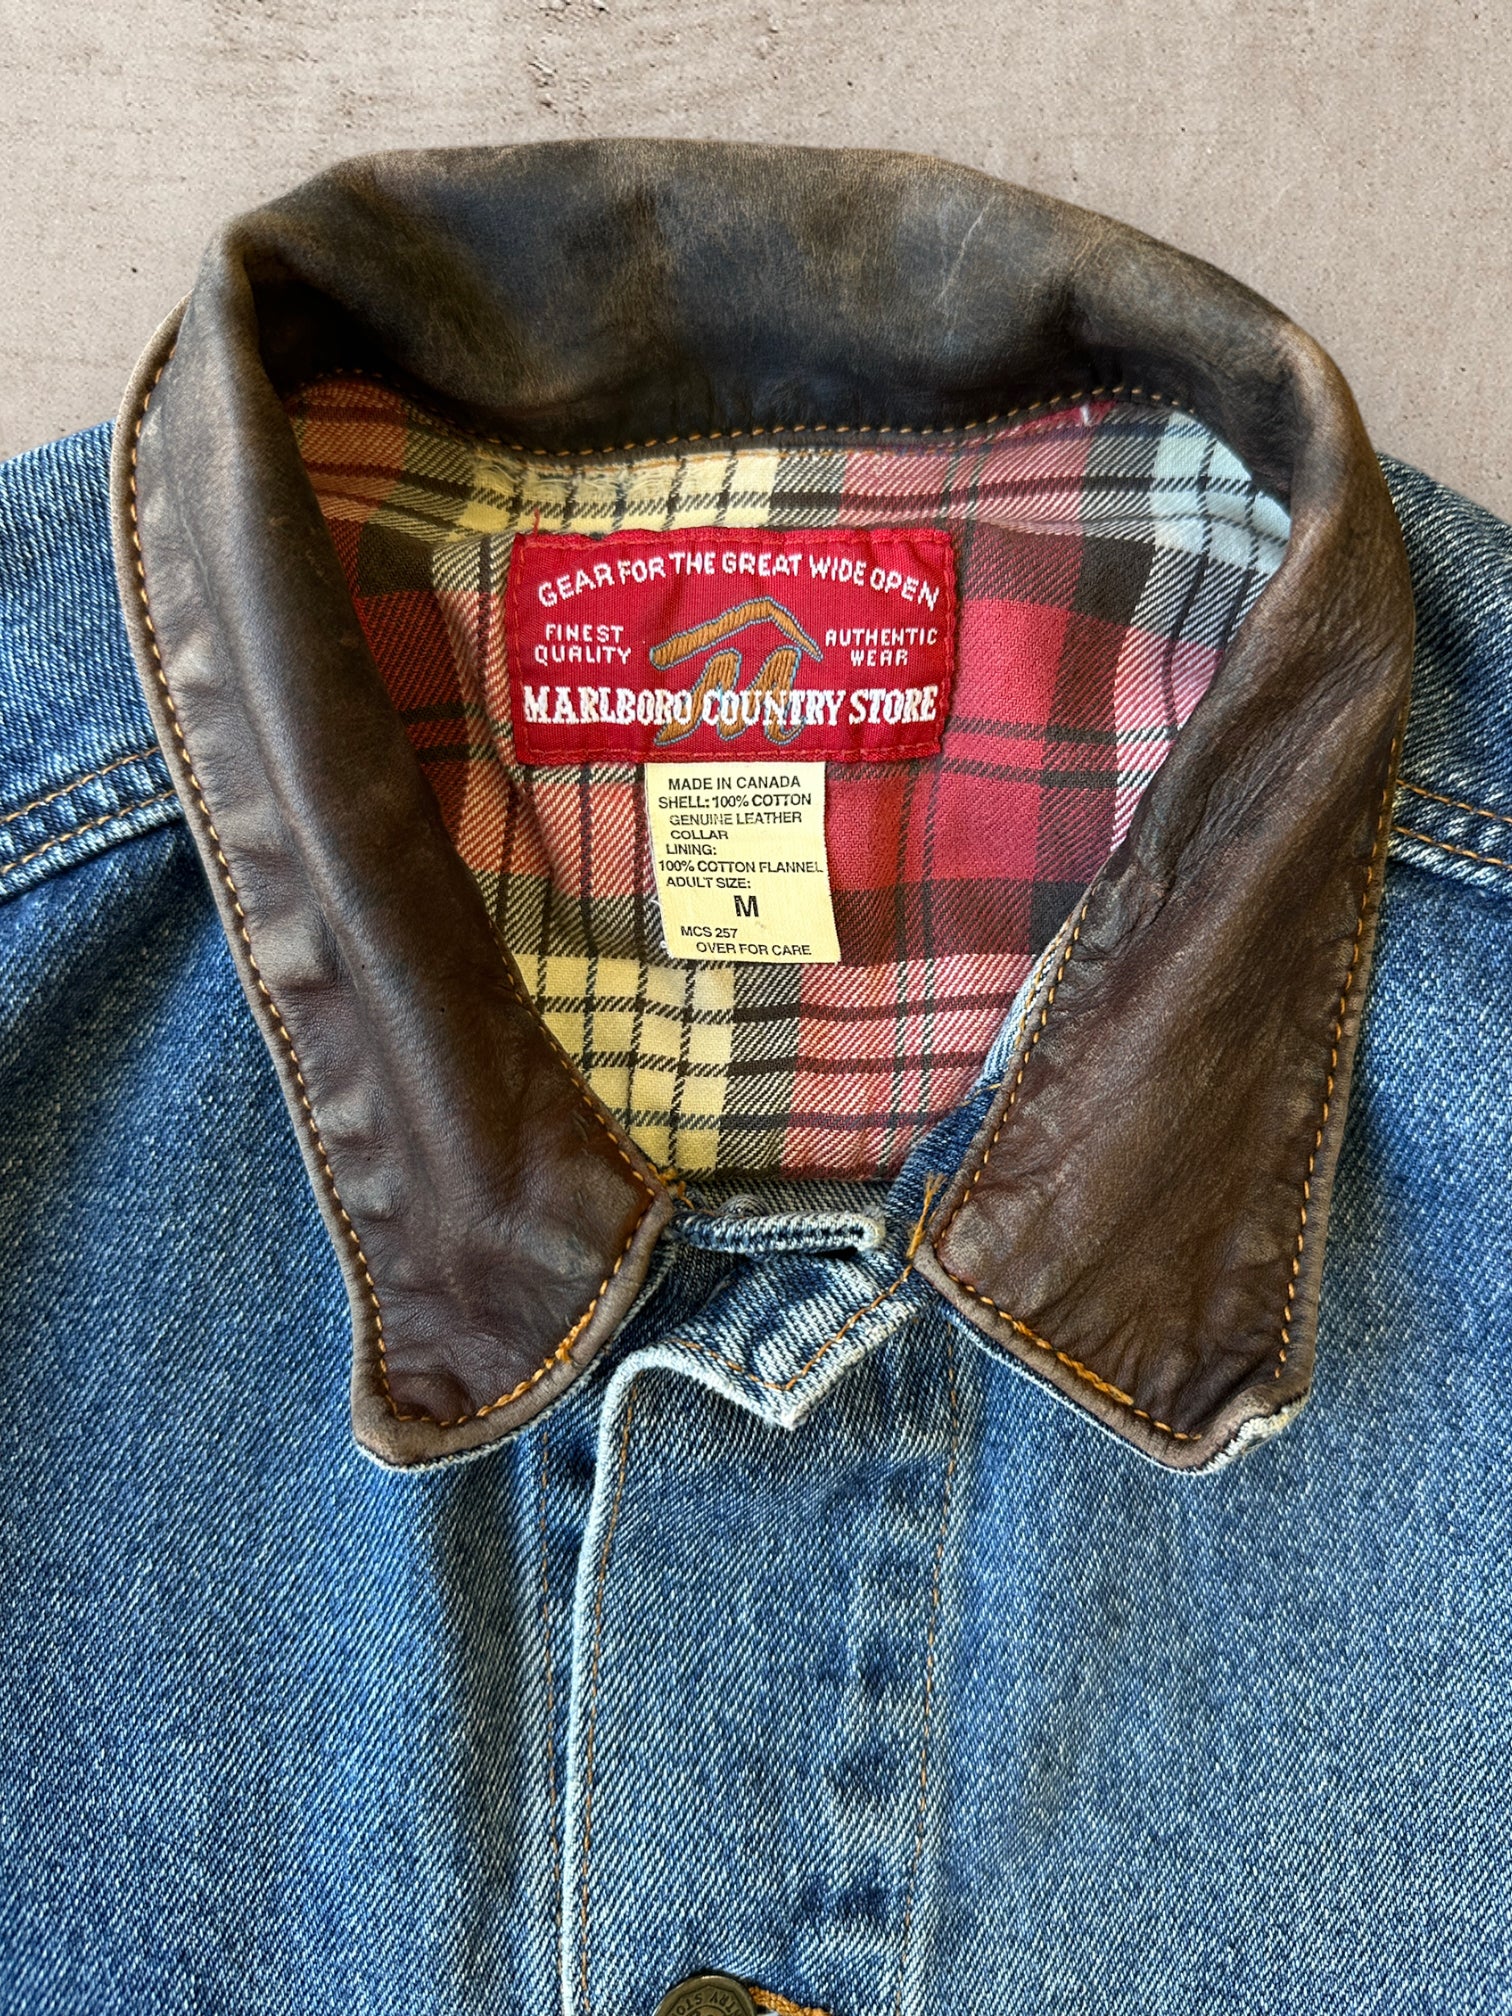 90s Marlboro Cigarettes Denim Jacket - Large